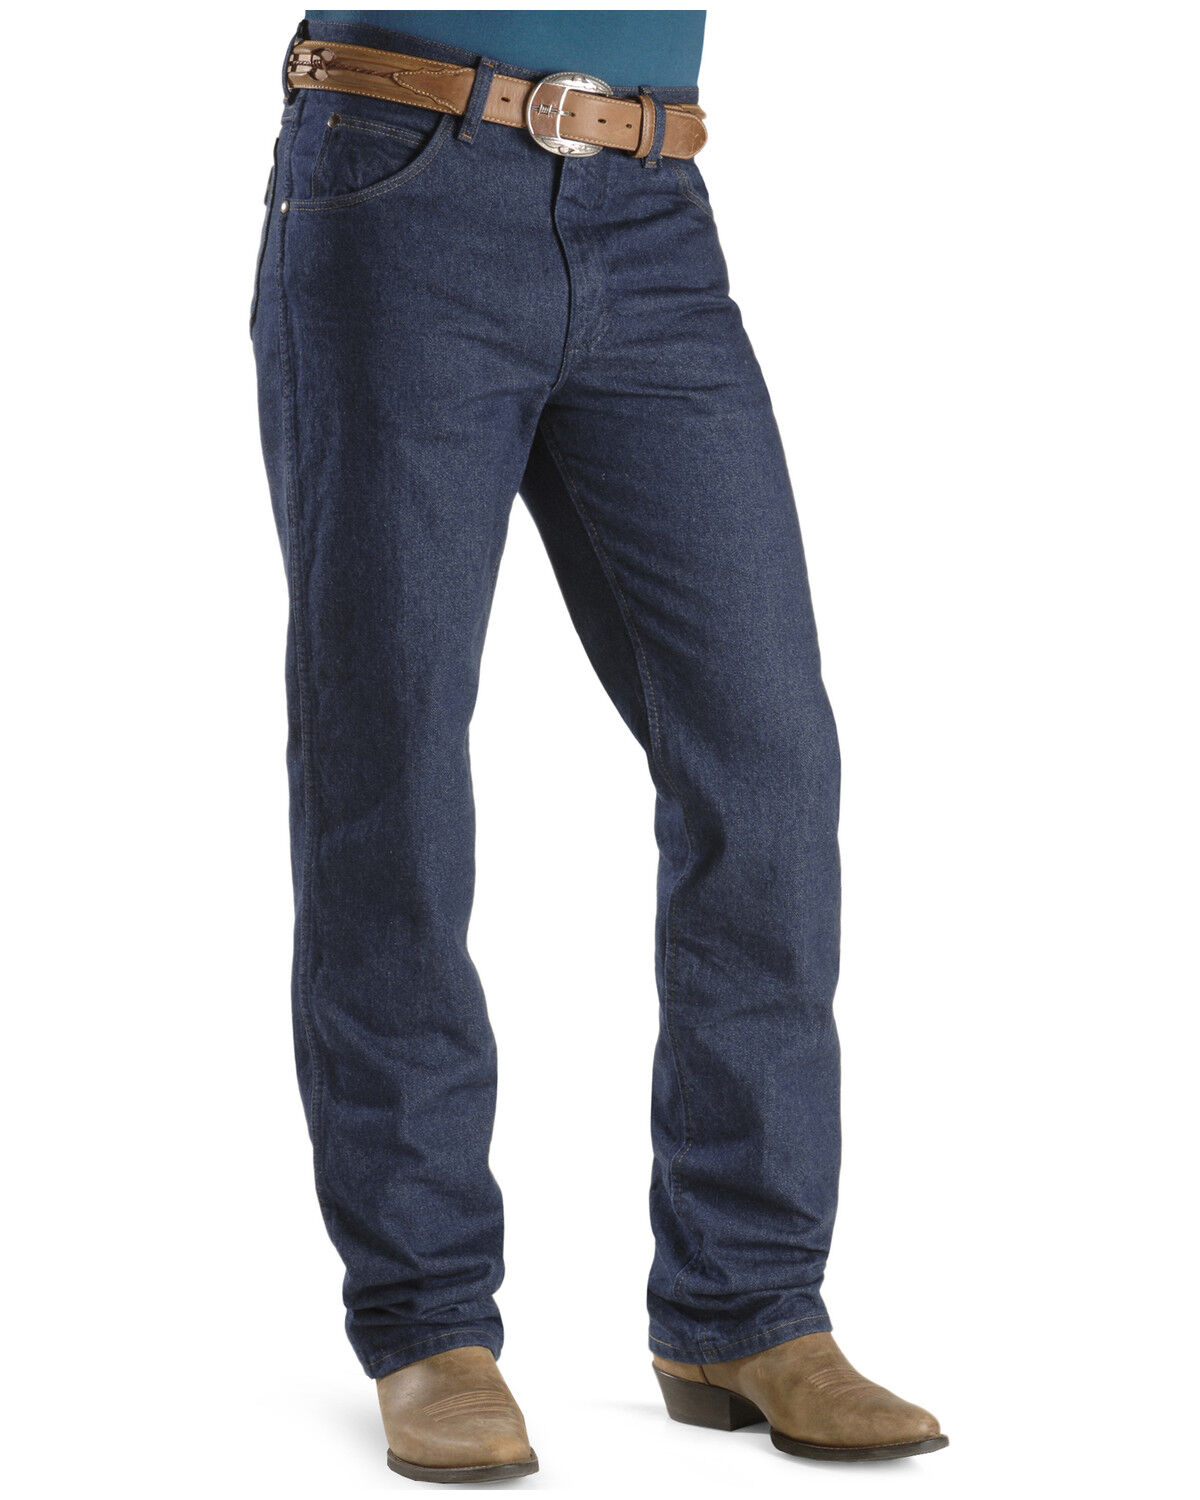 wrangler 36mwz jeans